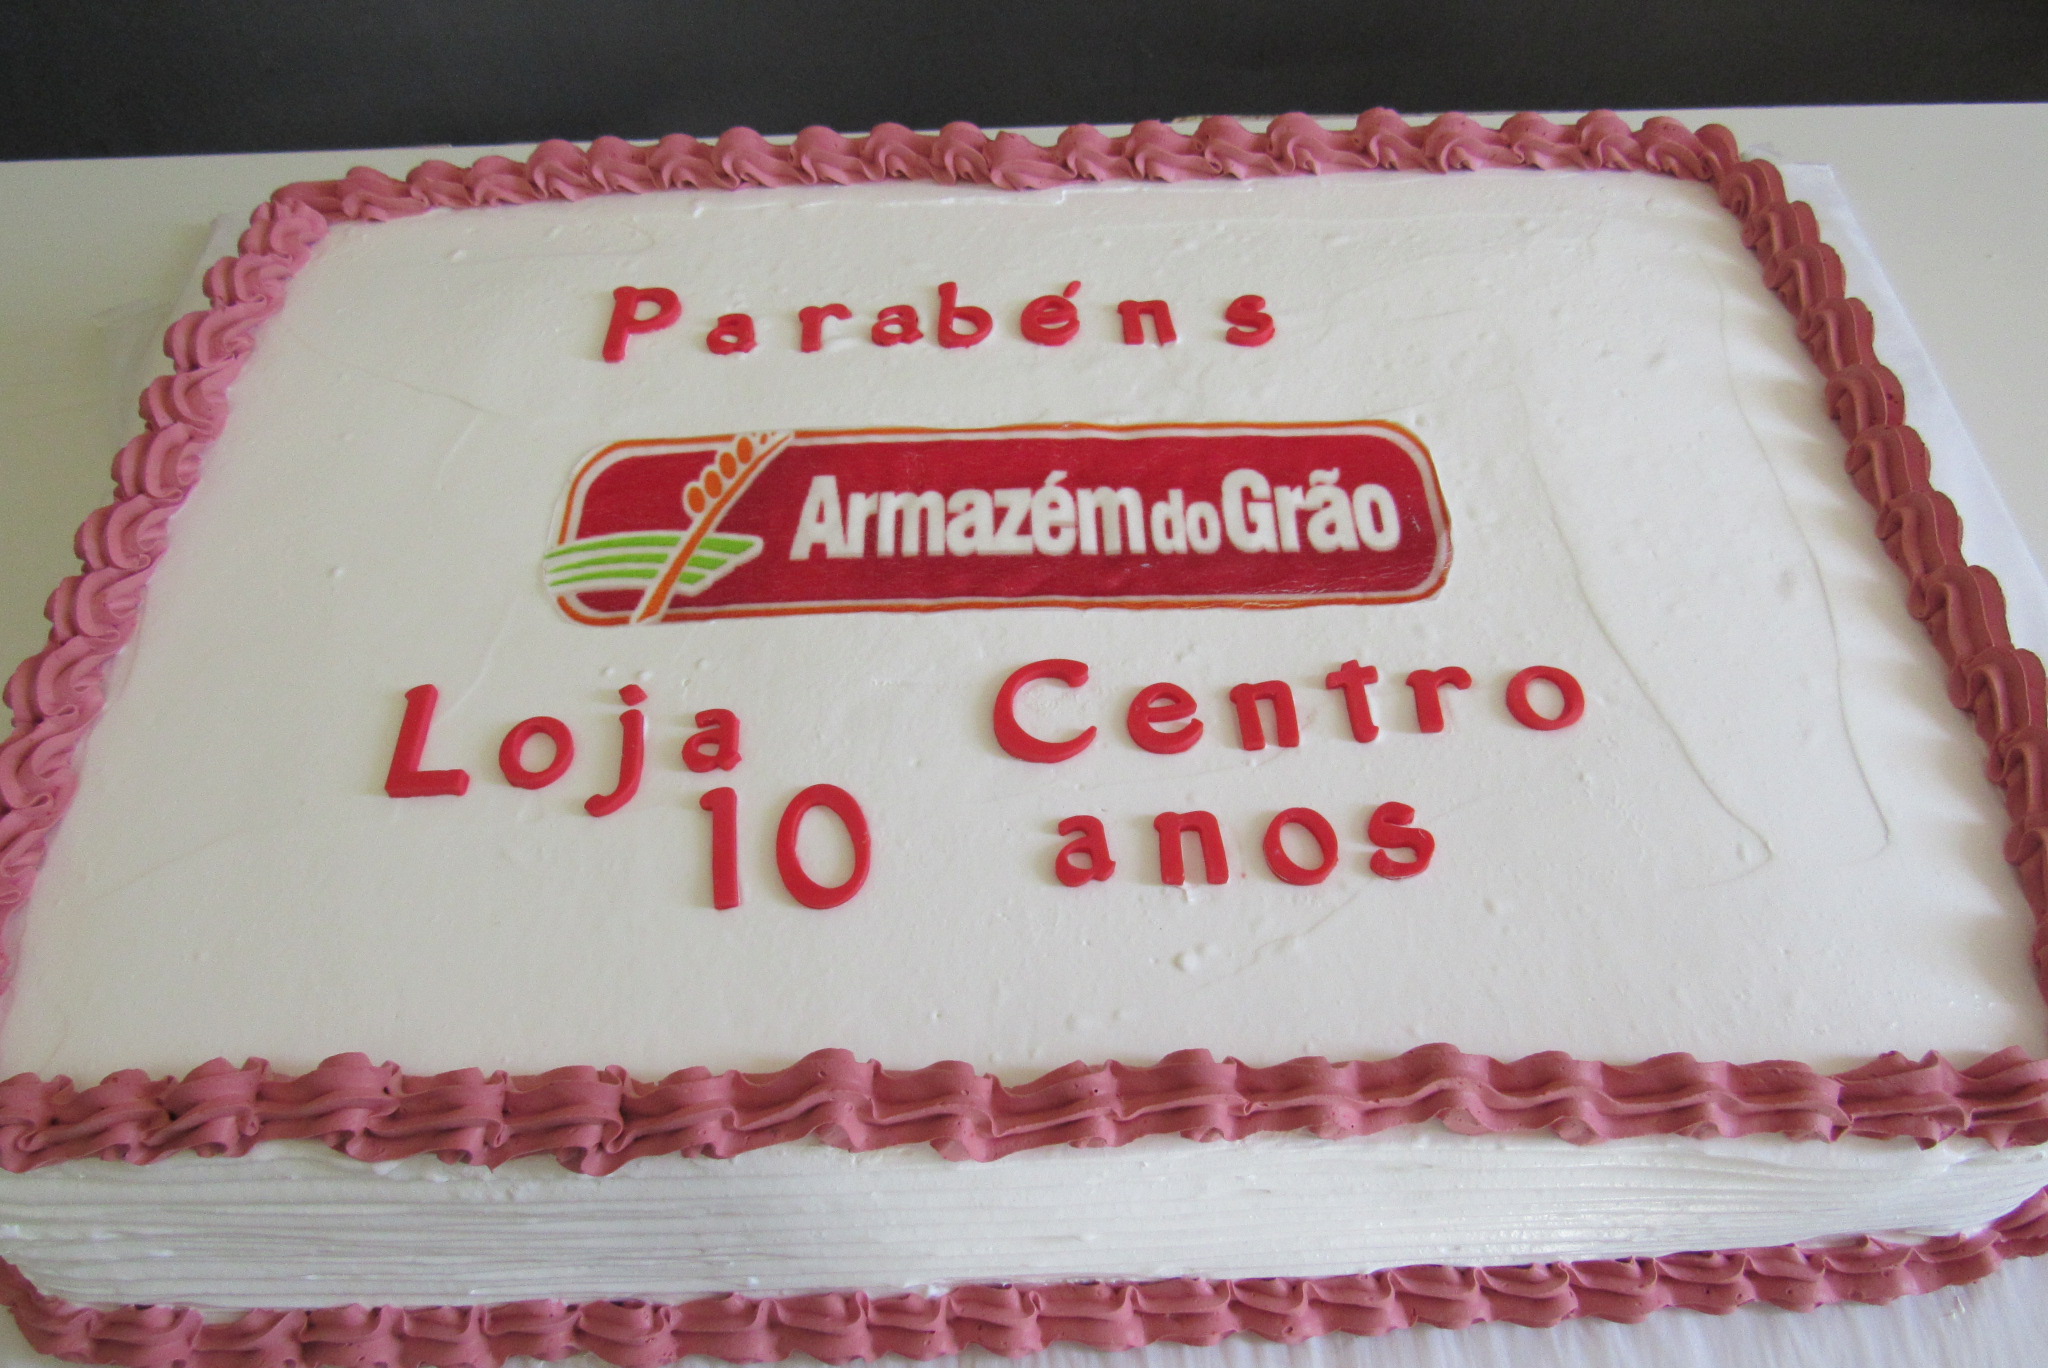 Armazém do Grão festeja 10 anos da marca e de sua primeira filial no Centro de Petrópolis